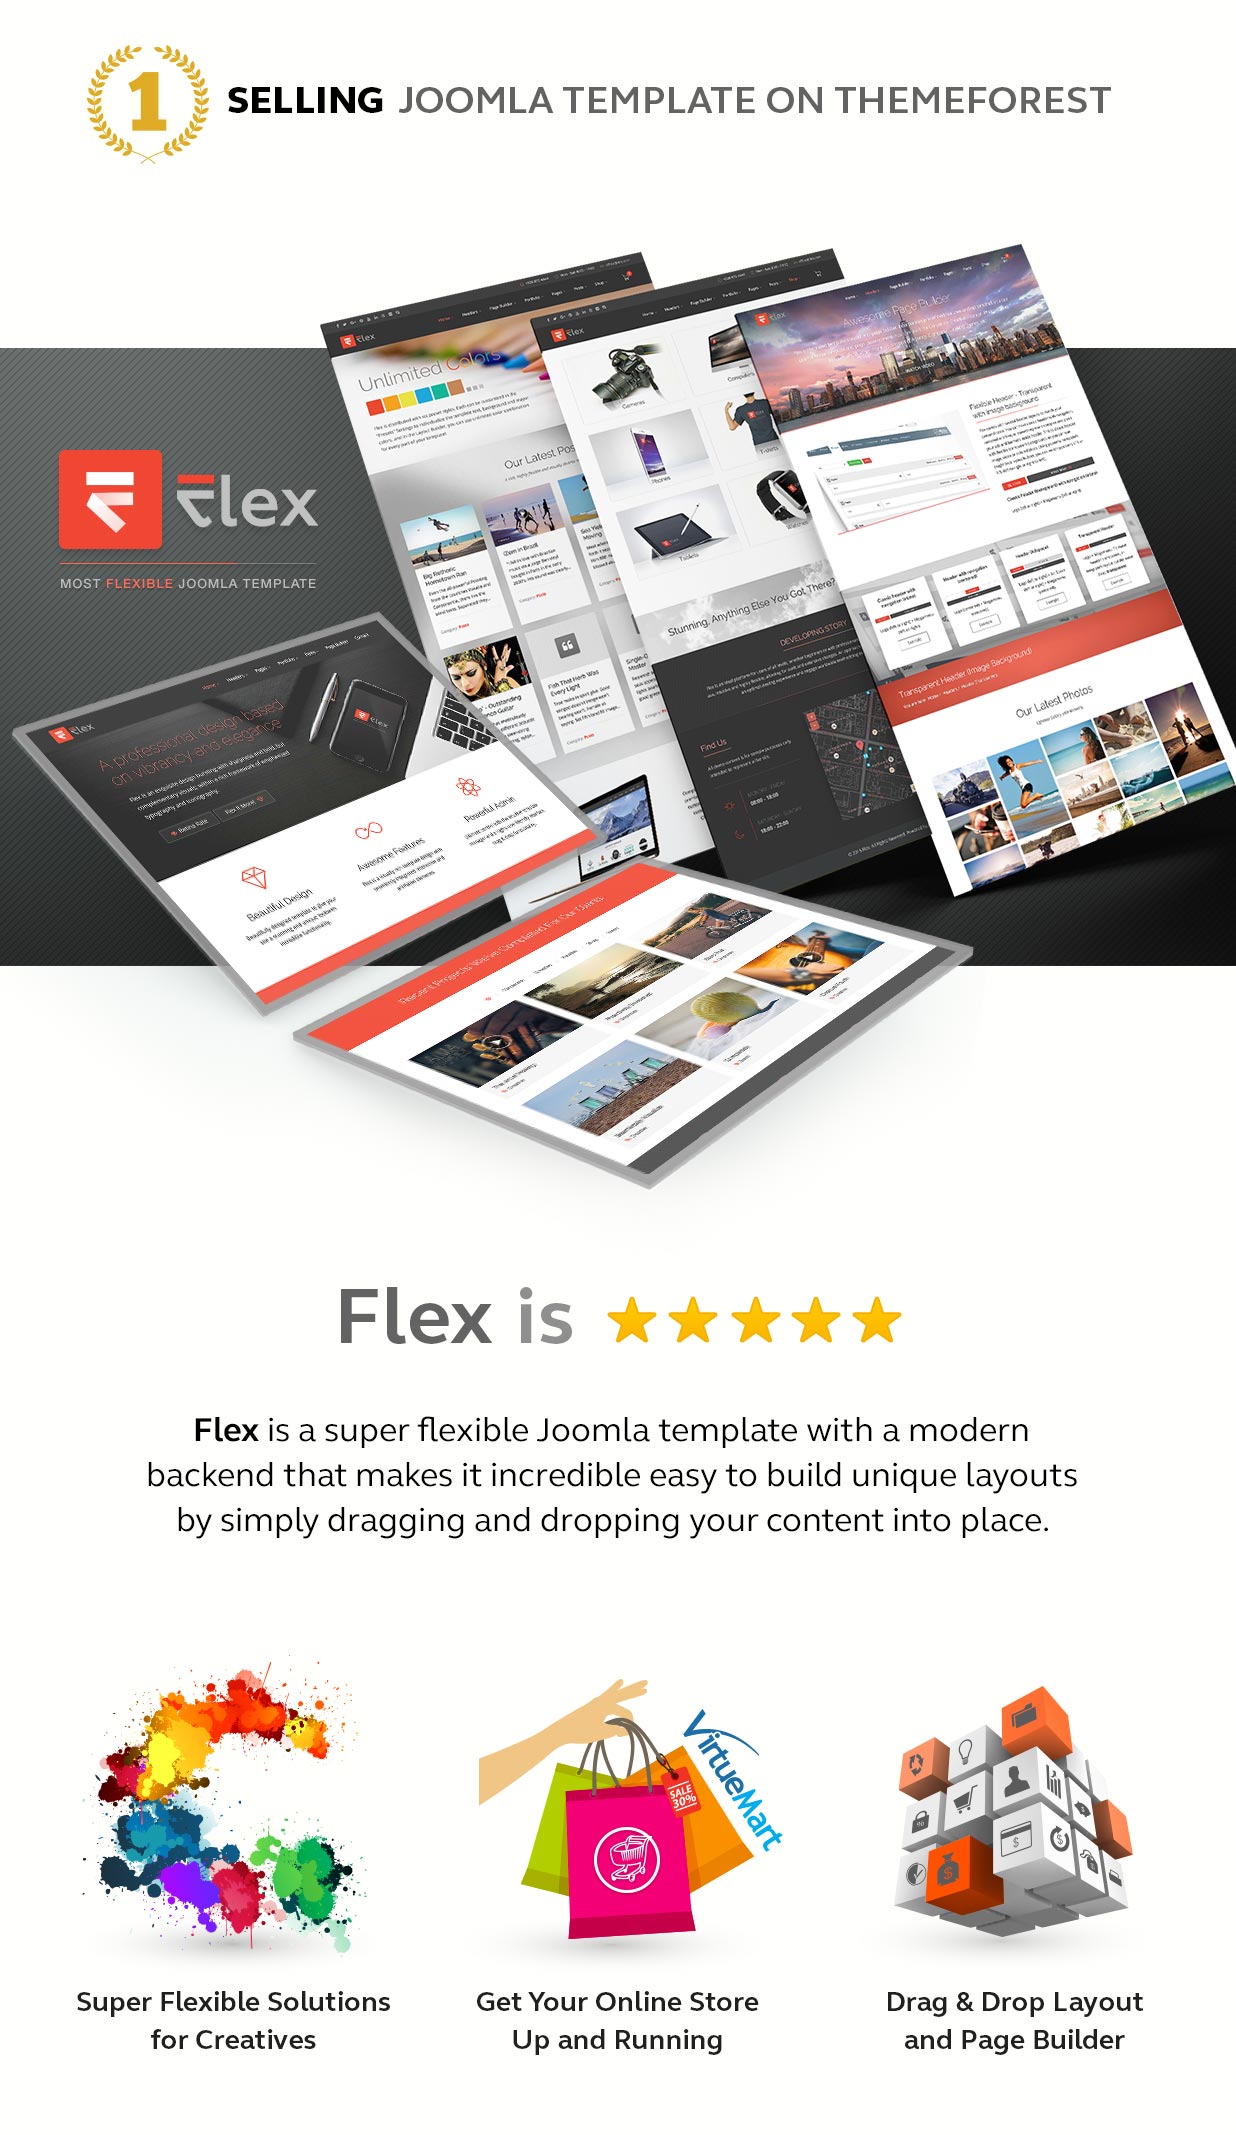 envato flex part1 no1 selling - FLEX - Multi-Purpose Joomla Template